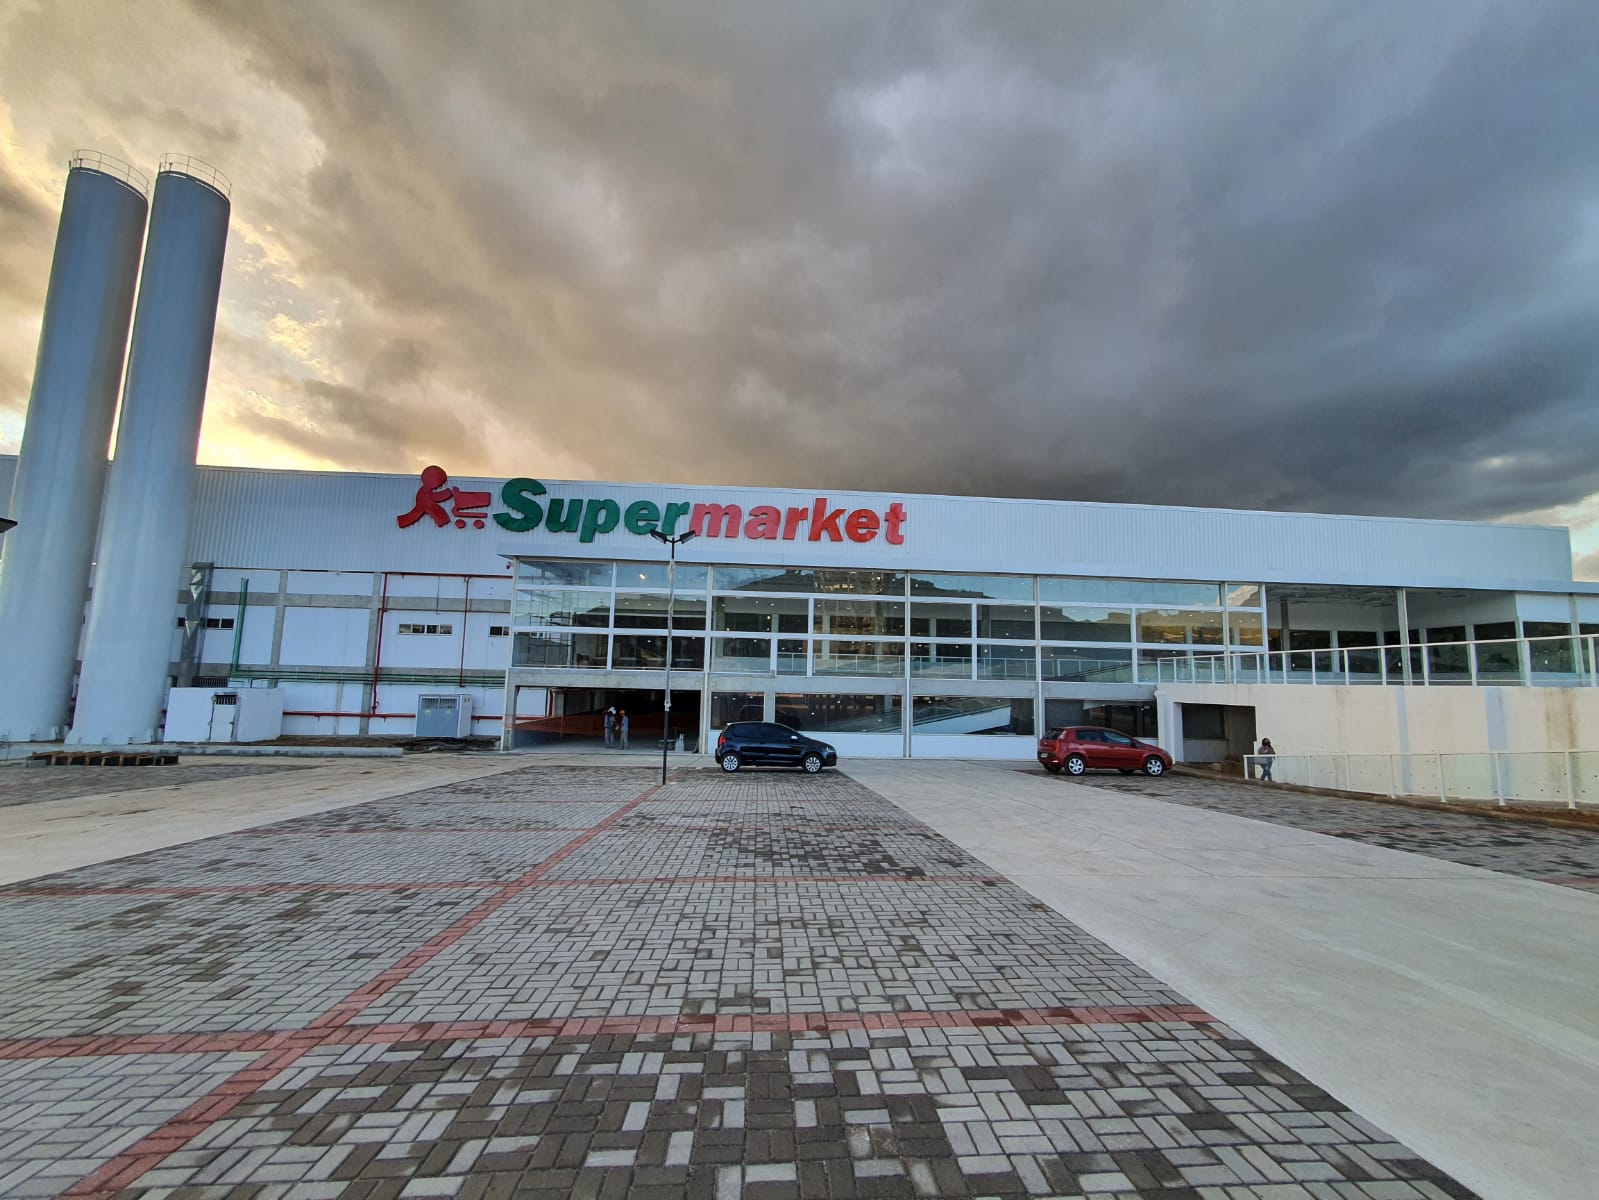 Supermarket inaugura unidade em Queimados